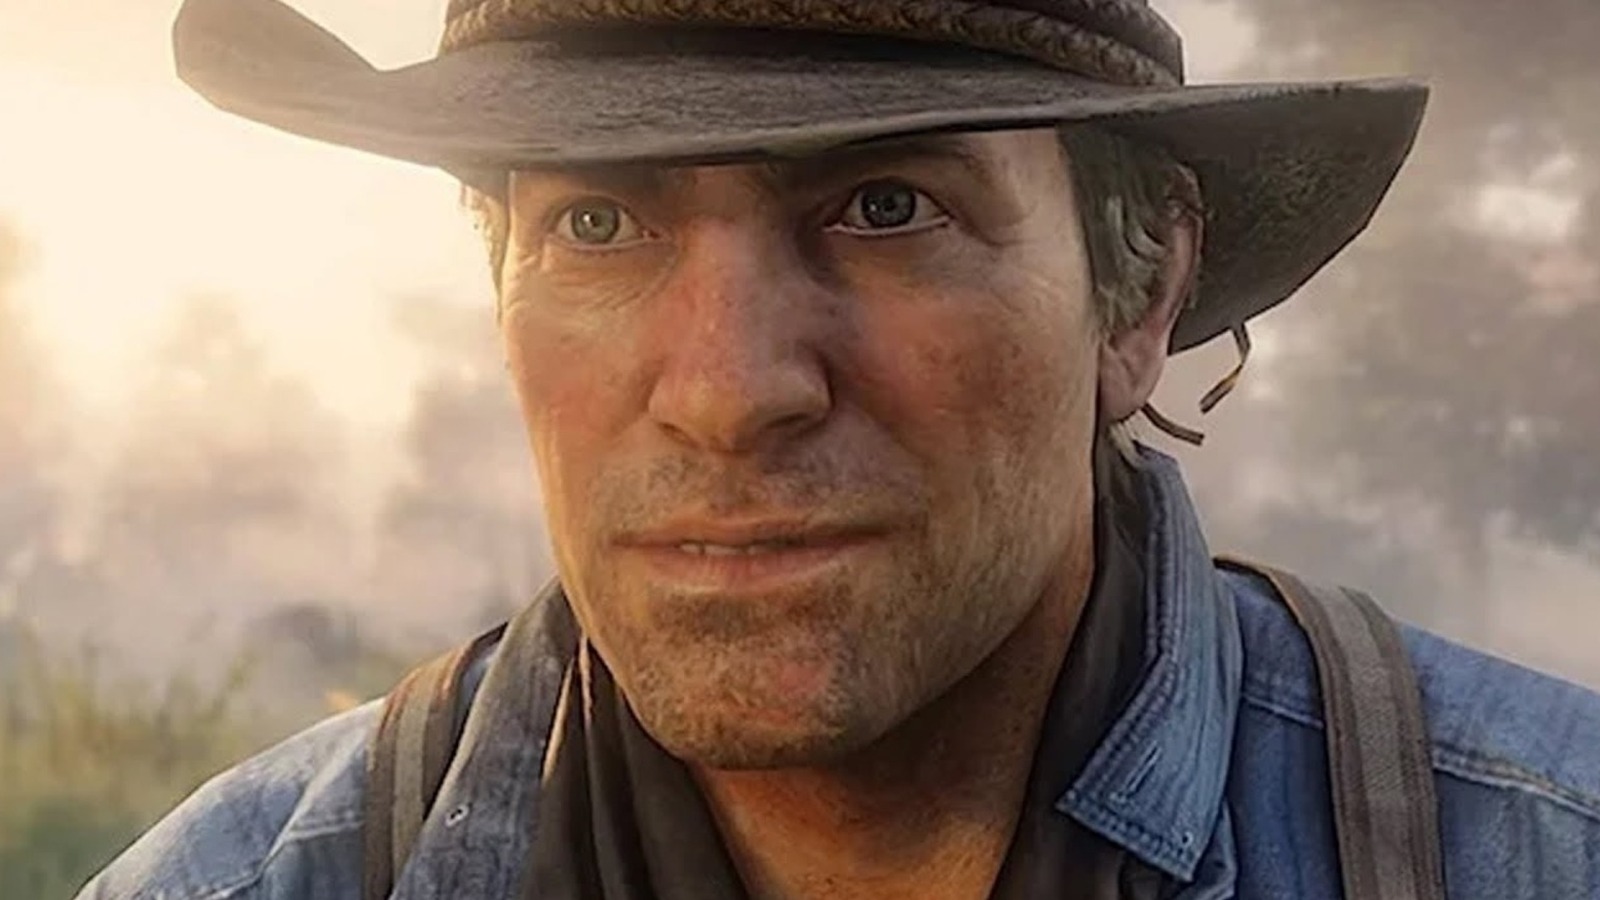 Destruktiv Hovedsagelig Enkelhed Experts Agree Red Dead Redemption 2 Has Real-Life Benefits